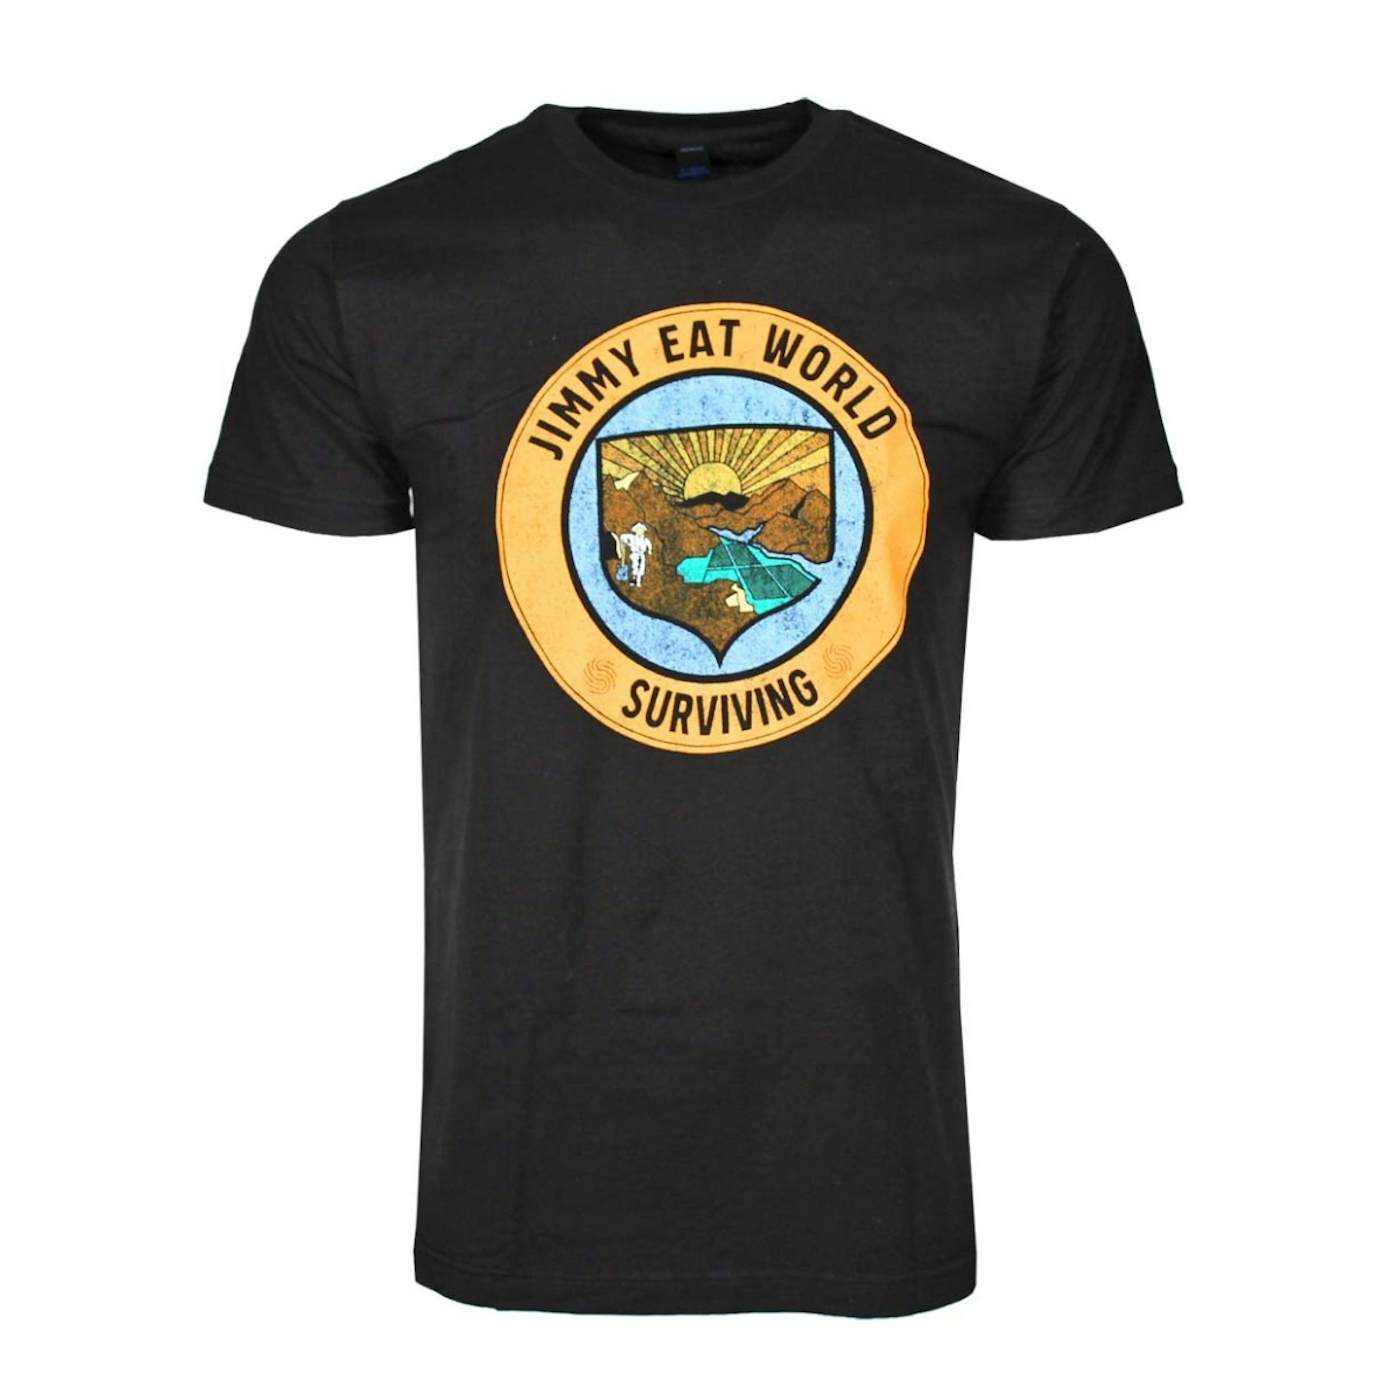 Jimmy Eat World T Shirt | Jimmy Eat World Surviving Crest T-Shirt